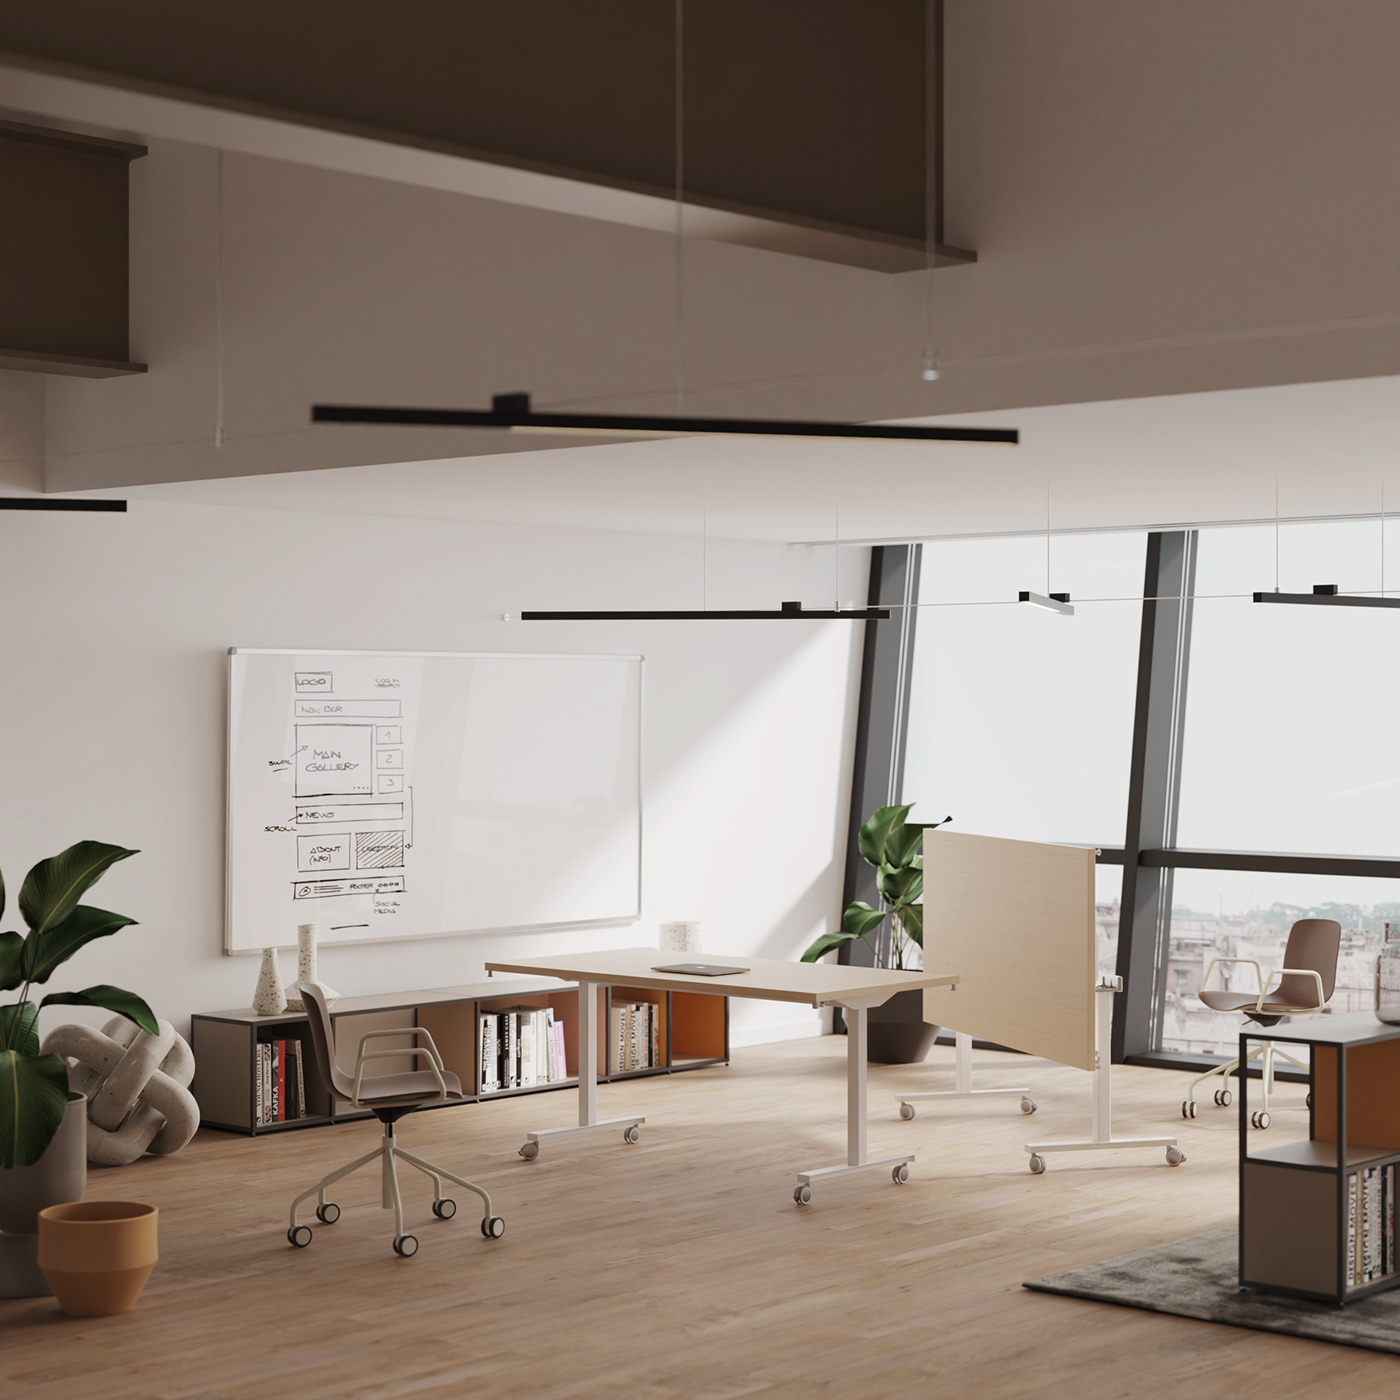 3D desk industrial interior design  keyshot Office planters portfolio product design  Render